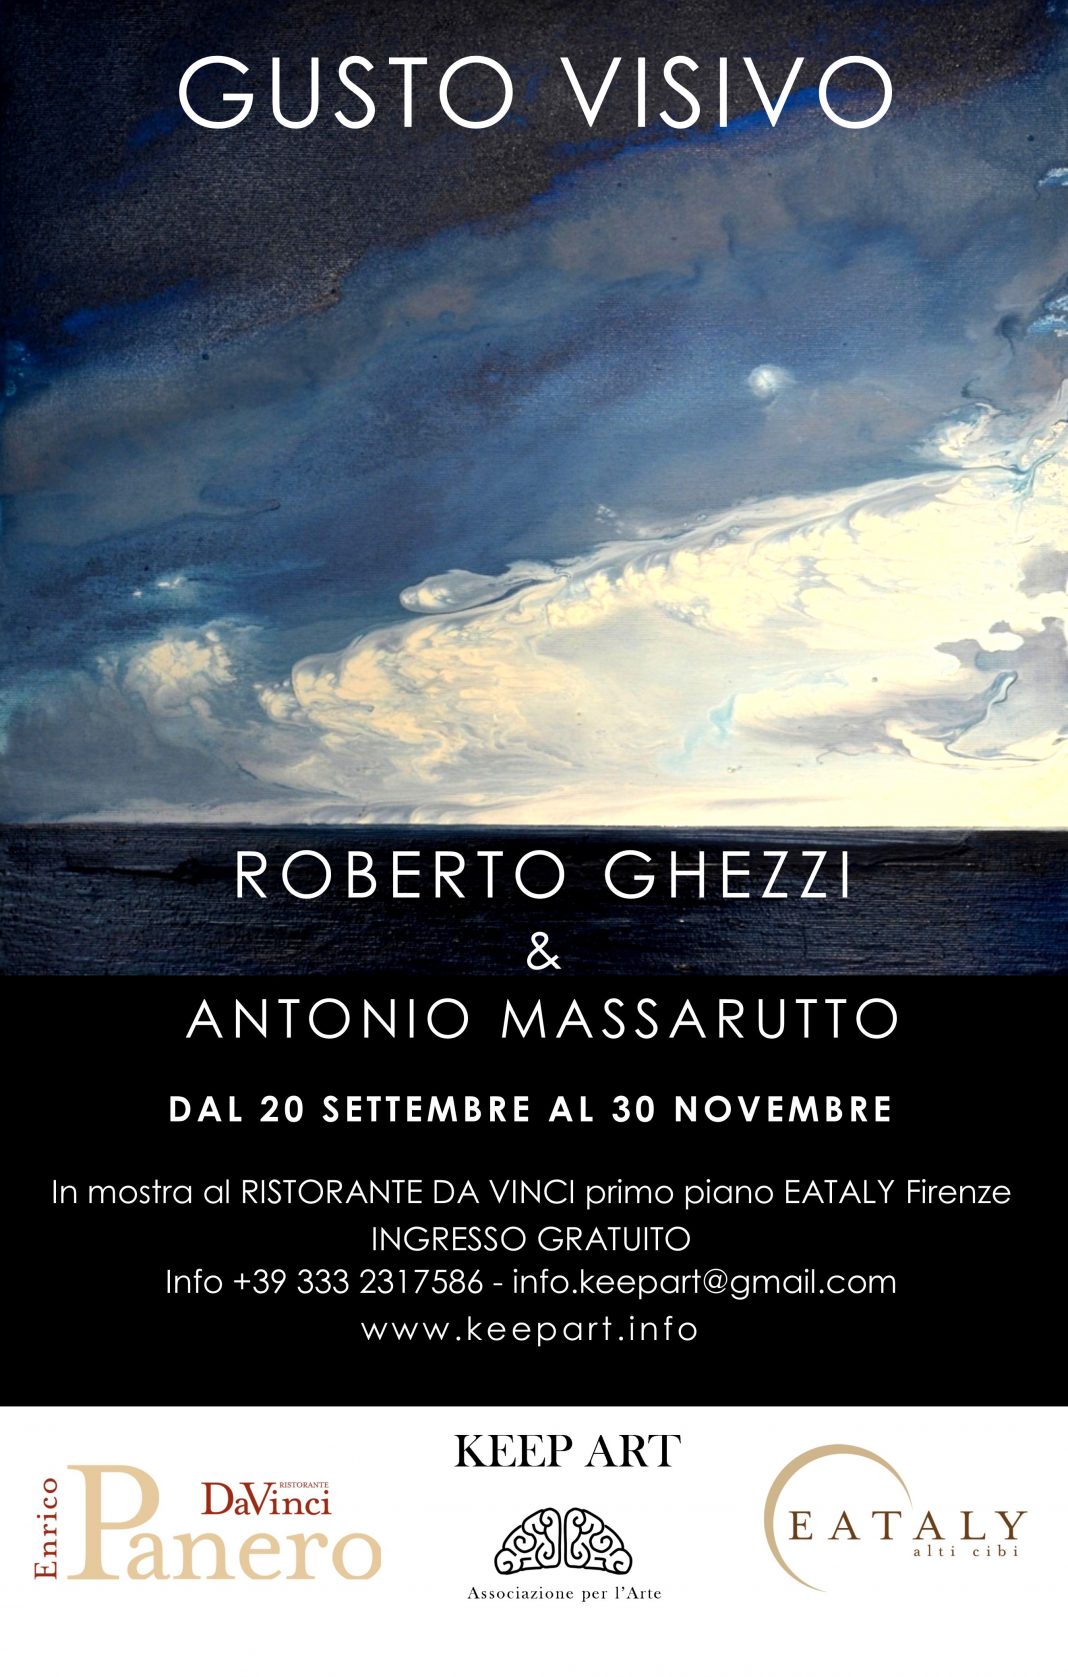 Roberto Ghezzi / Antonio Massarutto – Gusto Visivohttps://www.exibart.com/repository/media/eventi/2015/09/roberto-ghezzi-antonio-massarutto-8211-gusto-visivo-1068x1677.jpg